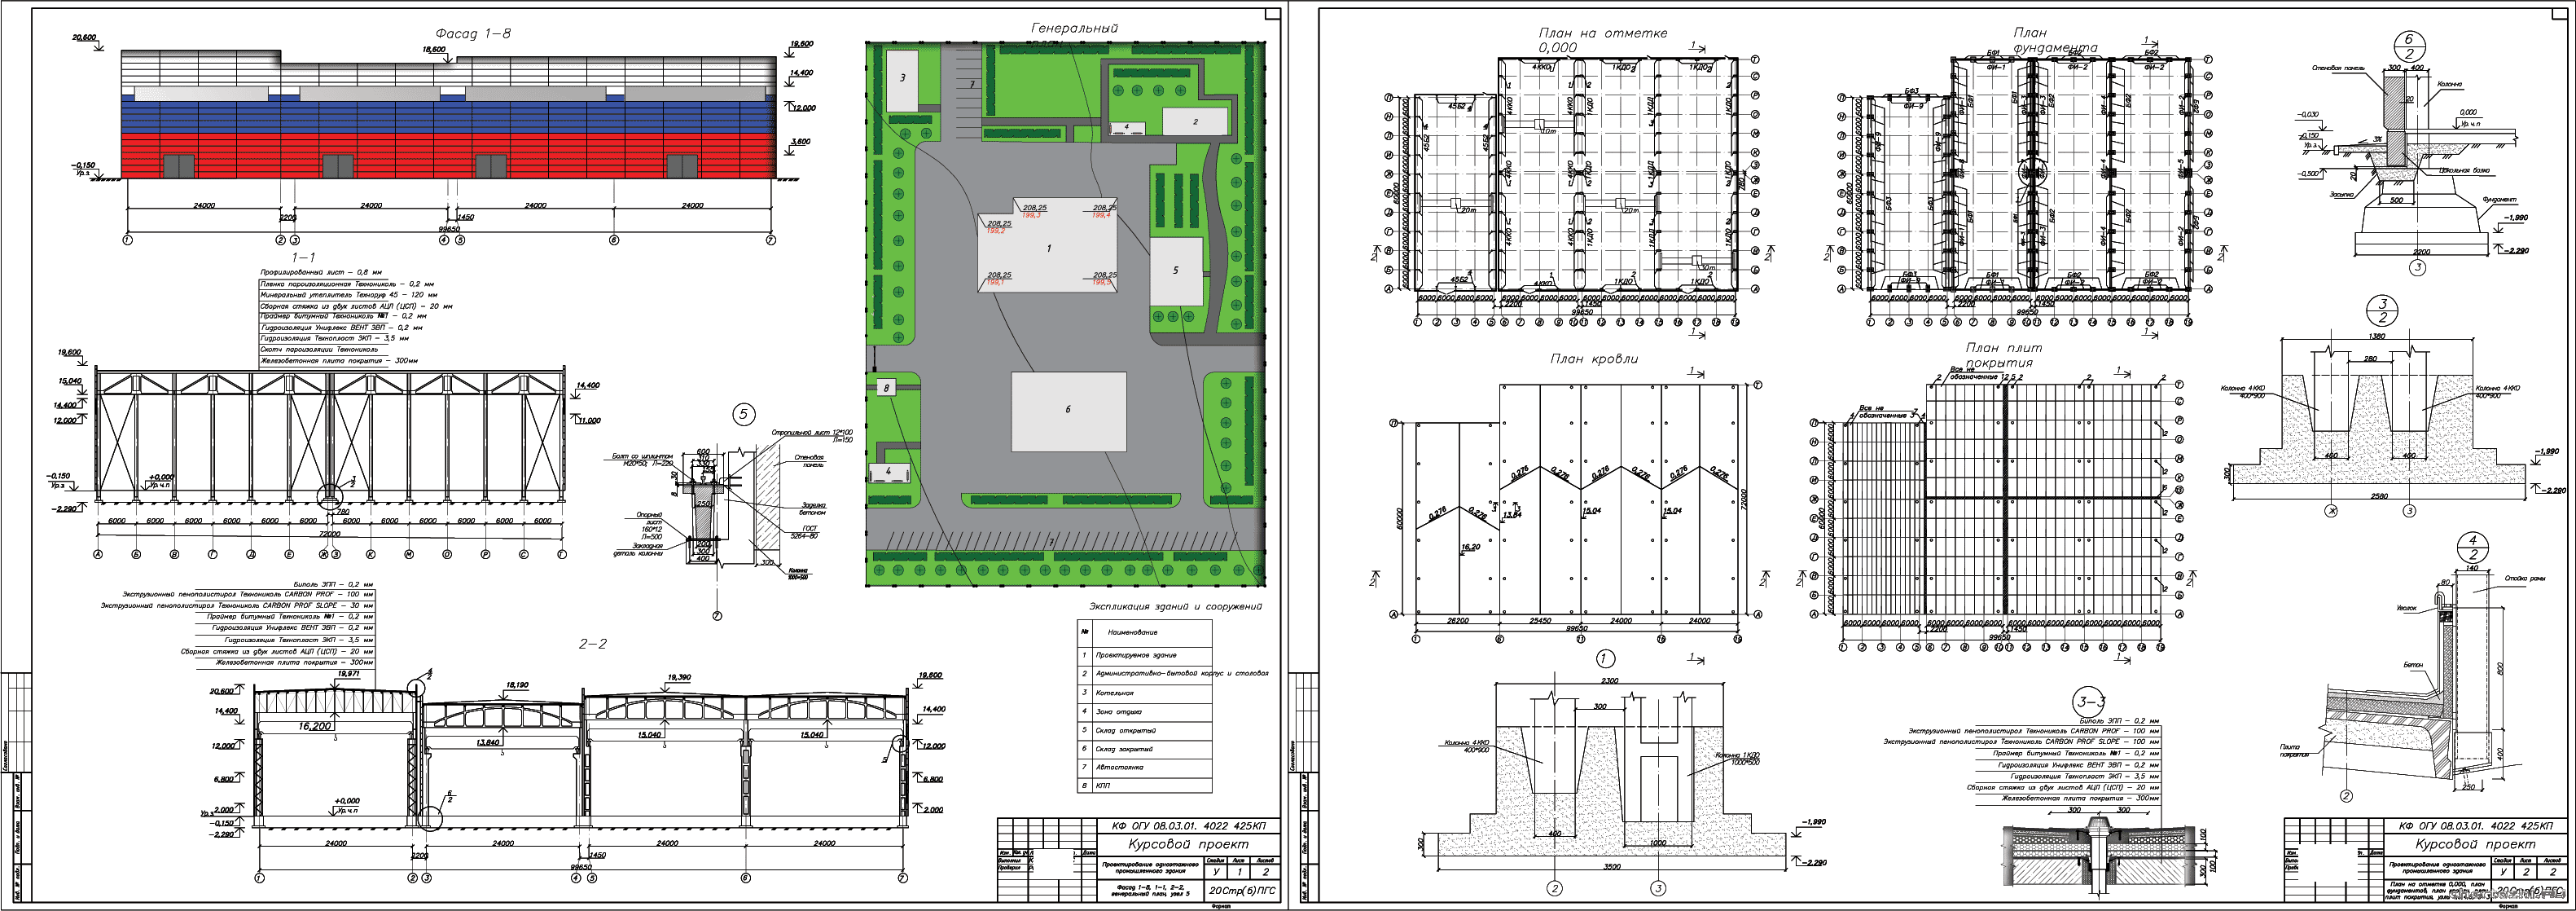 Курсовой проект - Одноэтажное промышленное здание 99,65 х 72,00 м в г. Кемерово